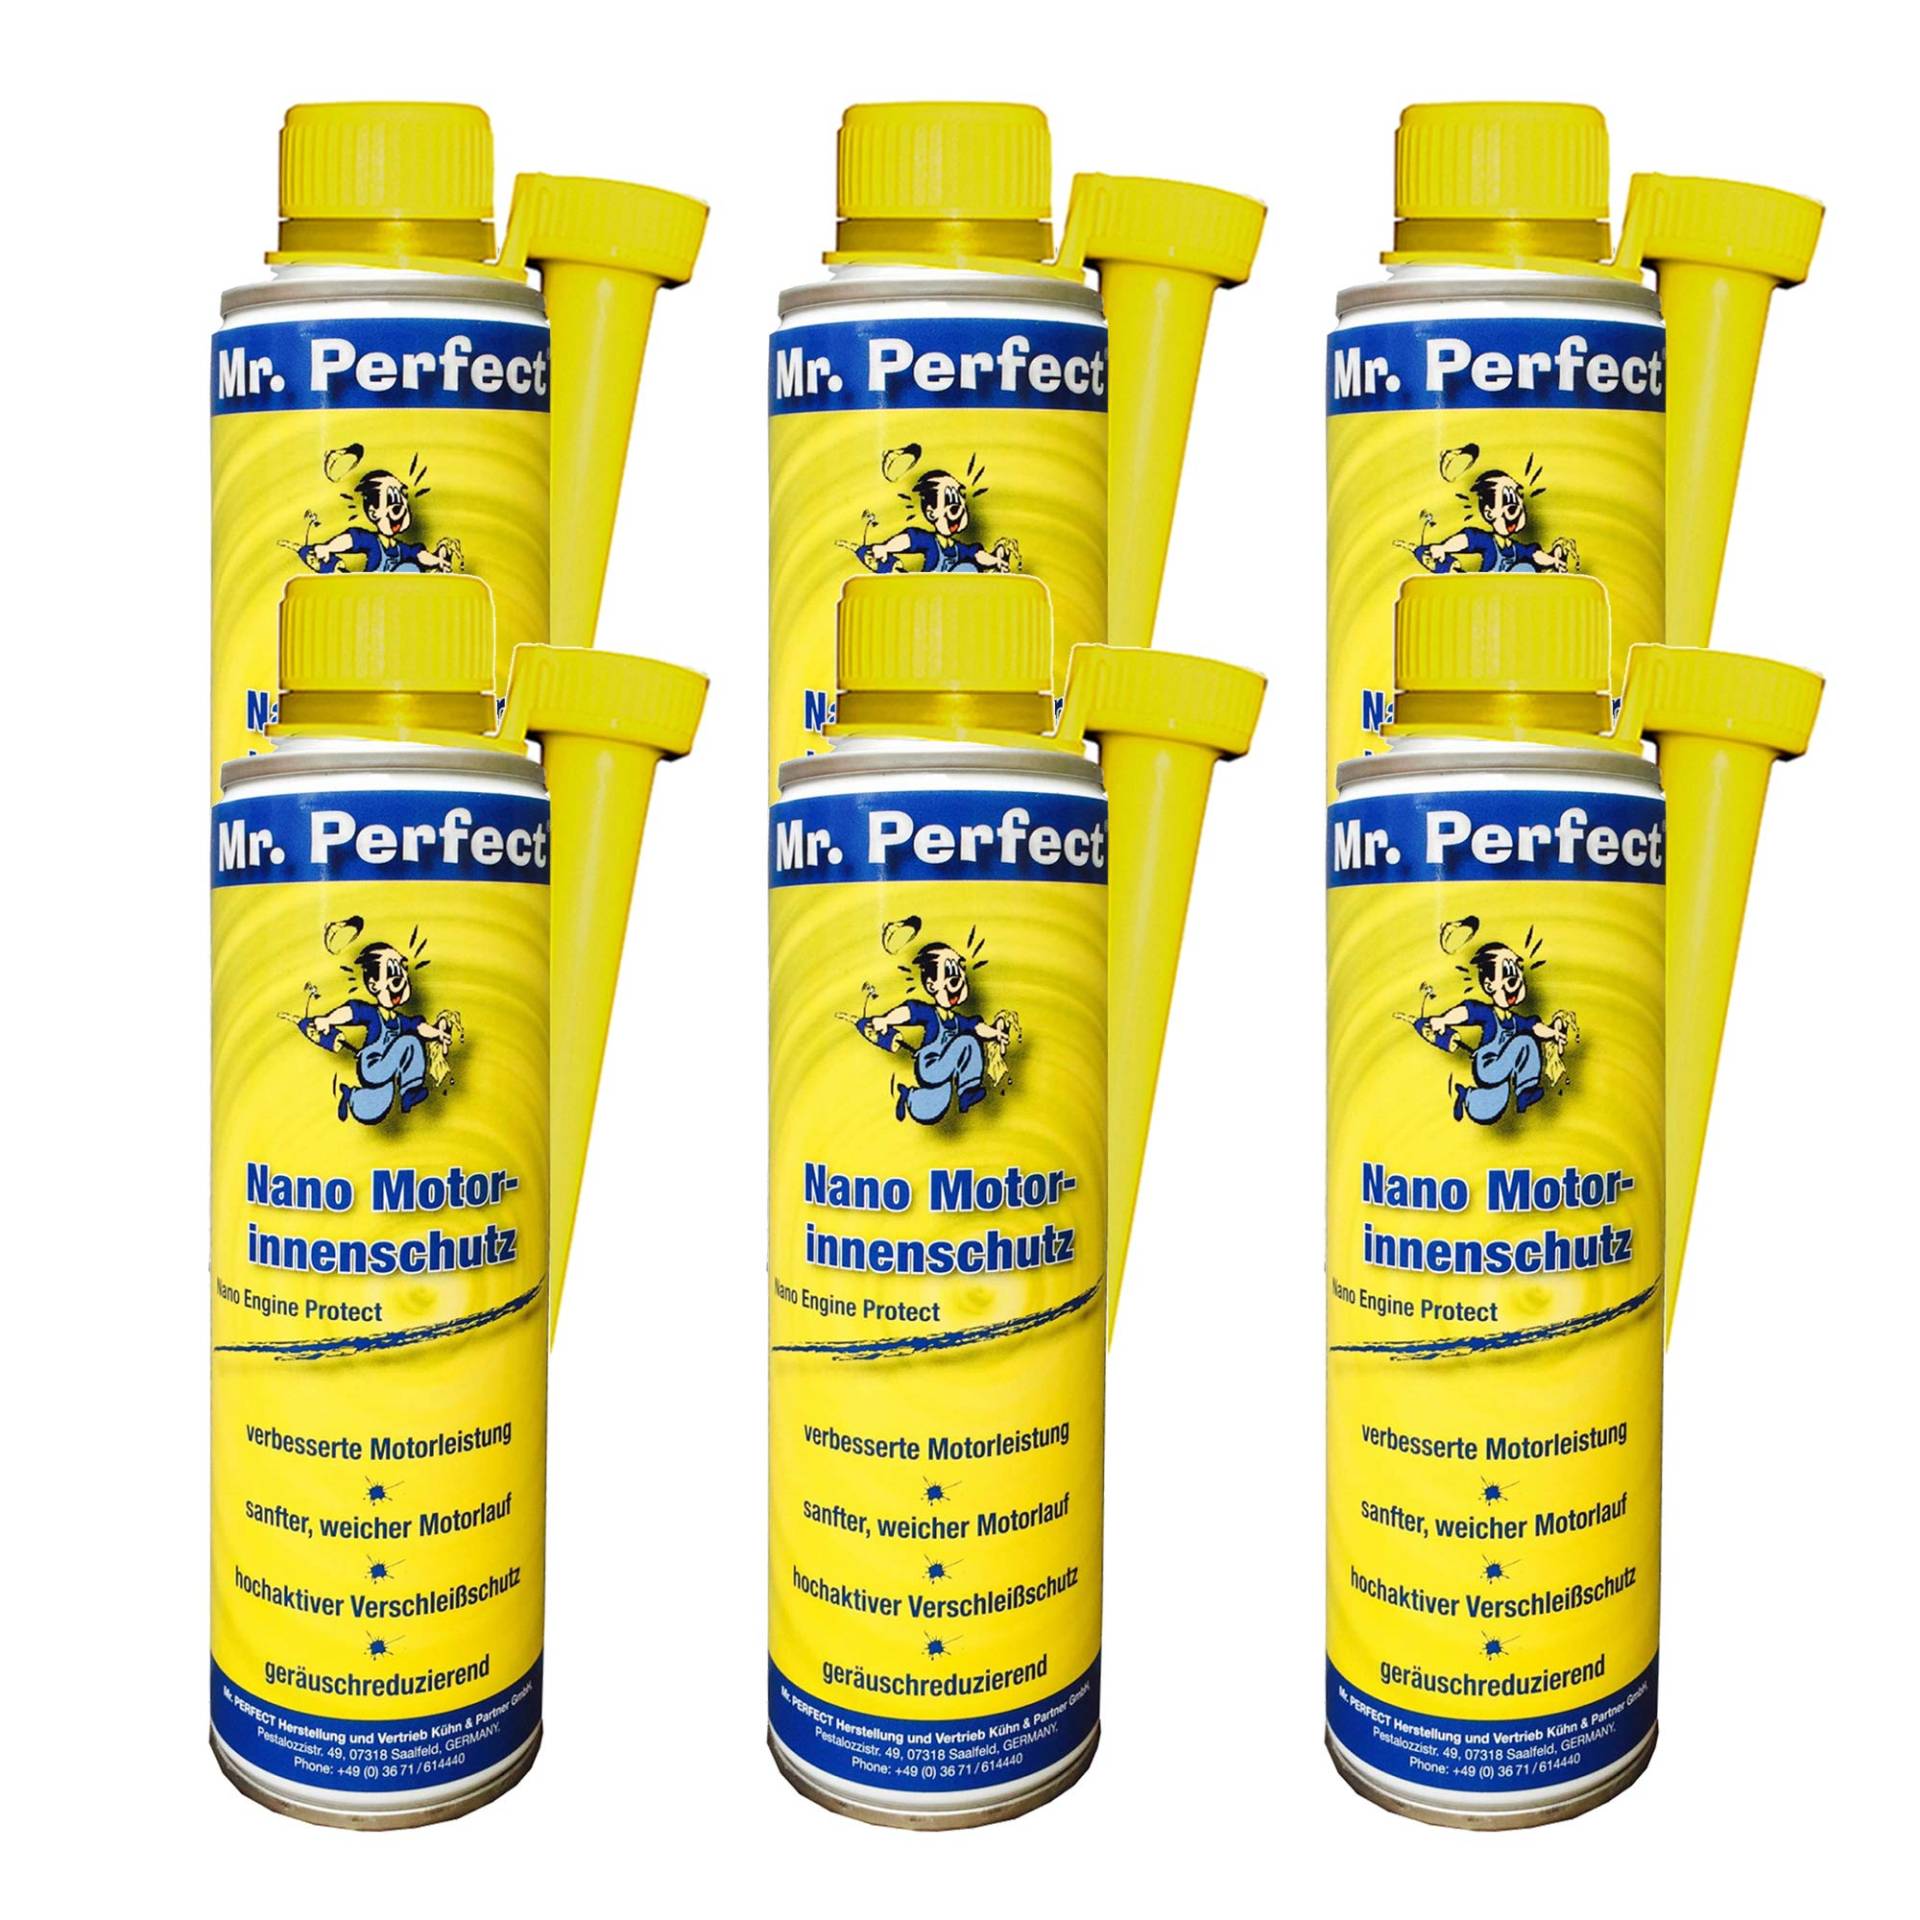 Mr. Perfect Nano Motorinnenschutz Ölzusatz, 6x 250 ml - Motorversiegelung Additiv von Mr. Perfect